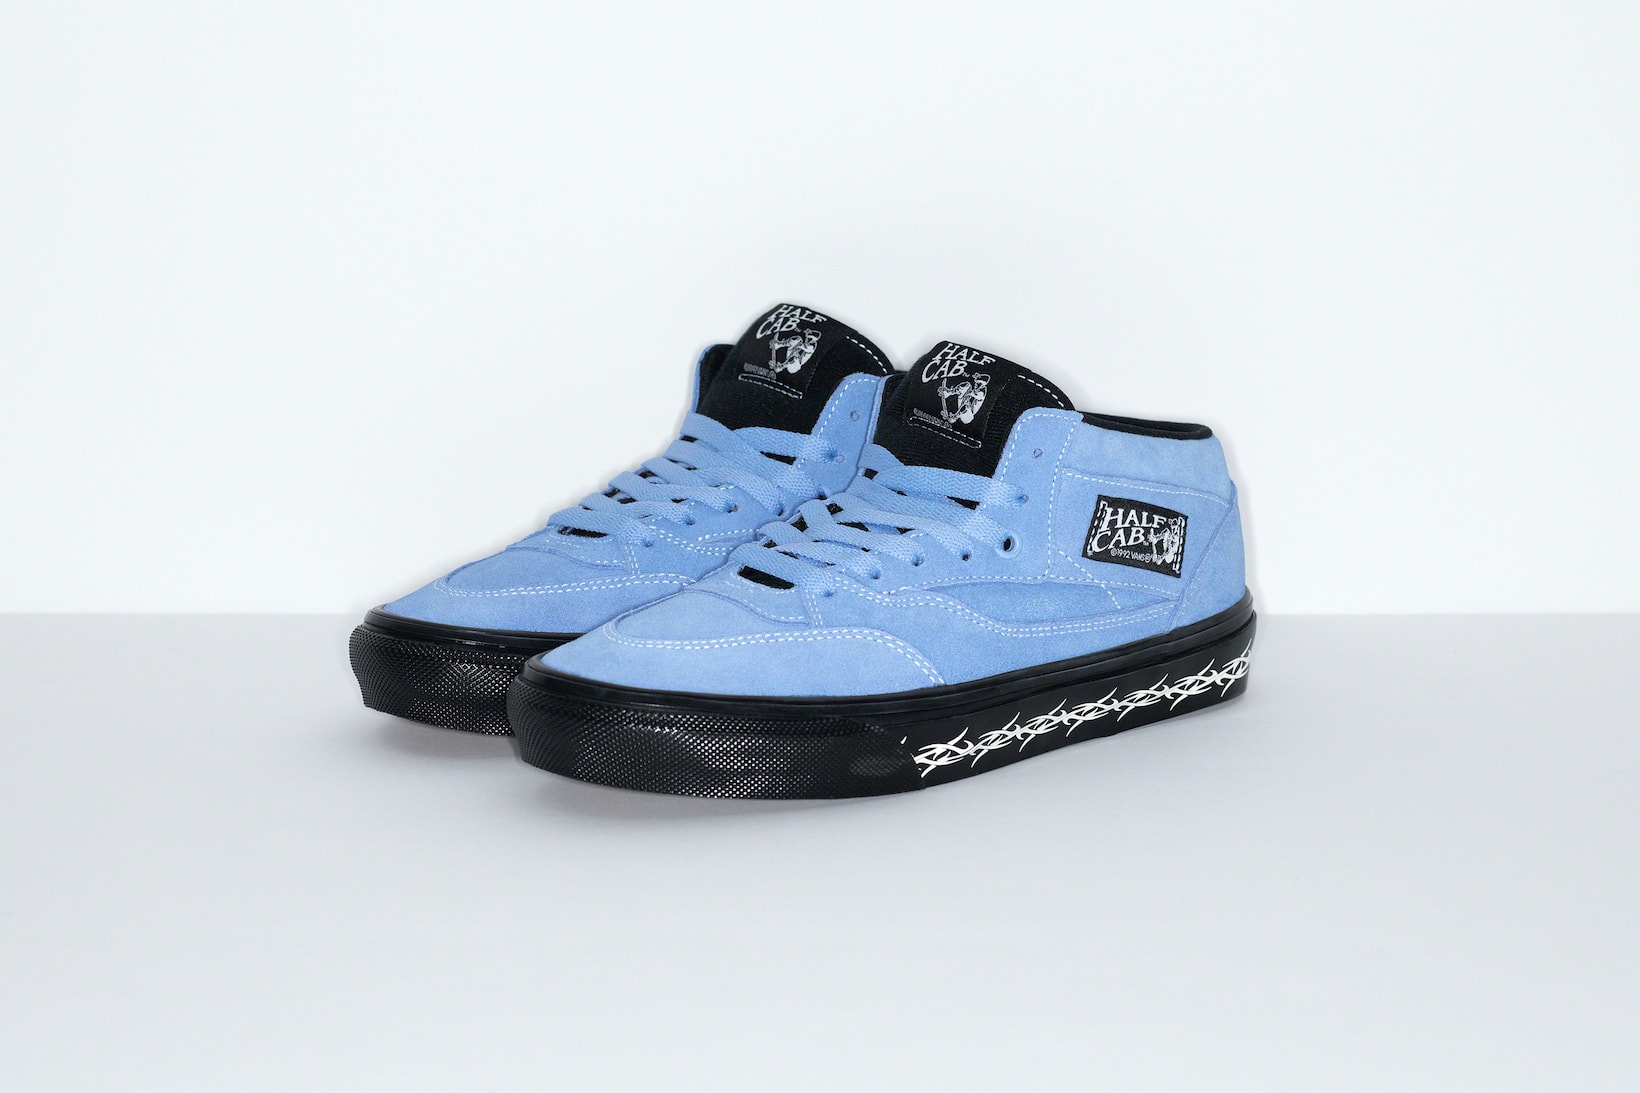 Supreme Vans Half Cab Old Skool Collaboration Sneakers Footwear Kicks Shoes